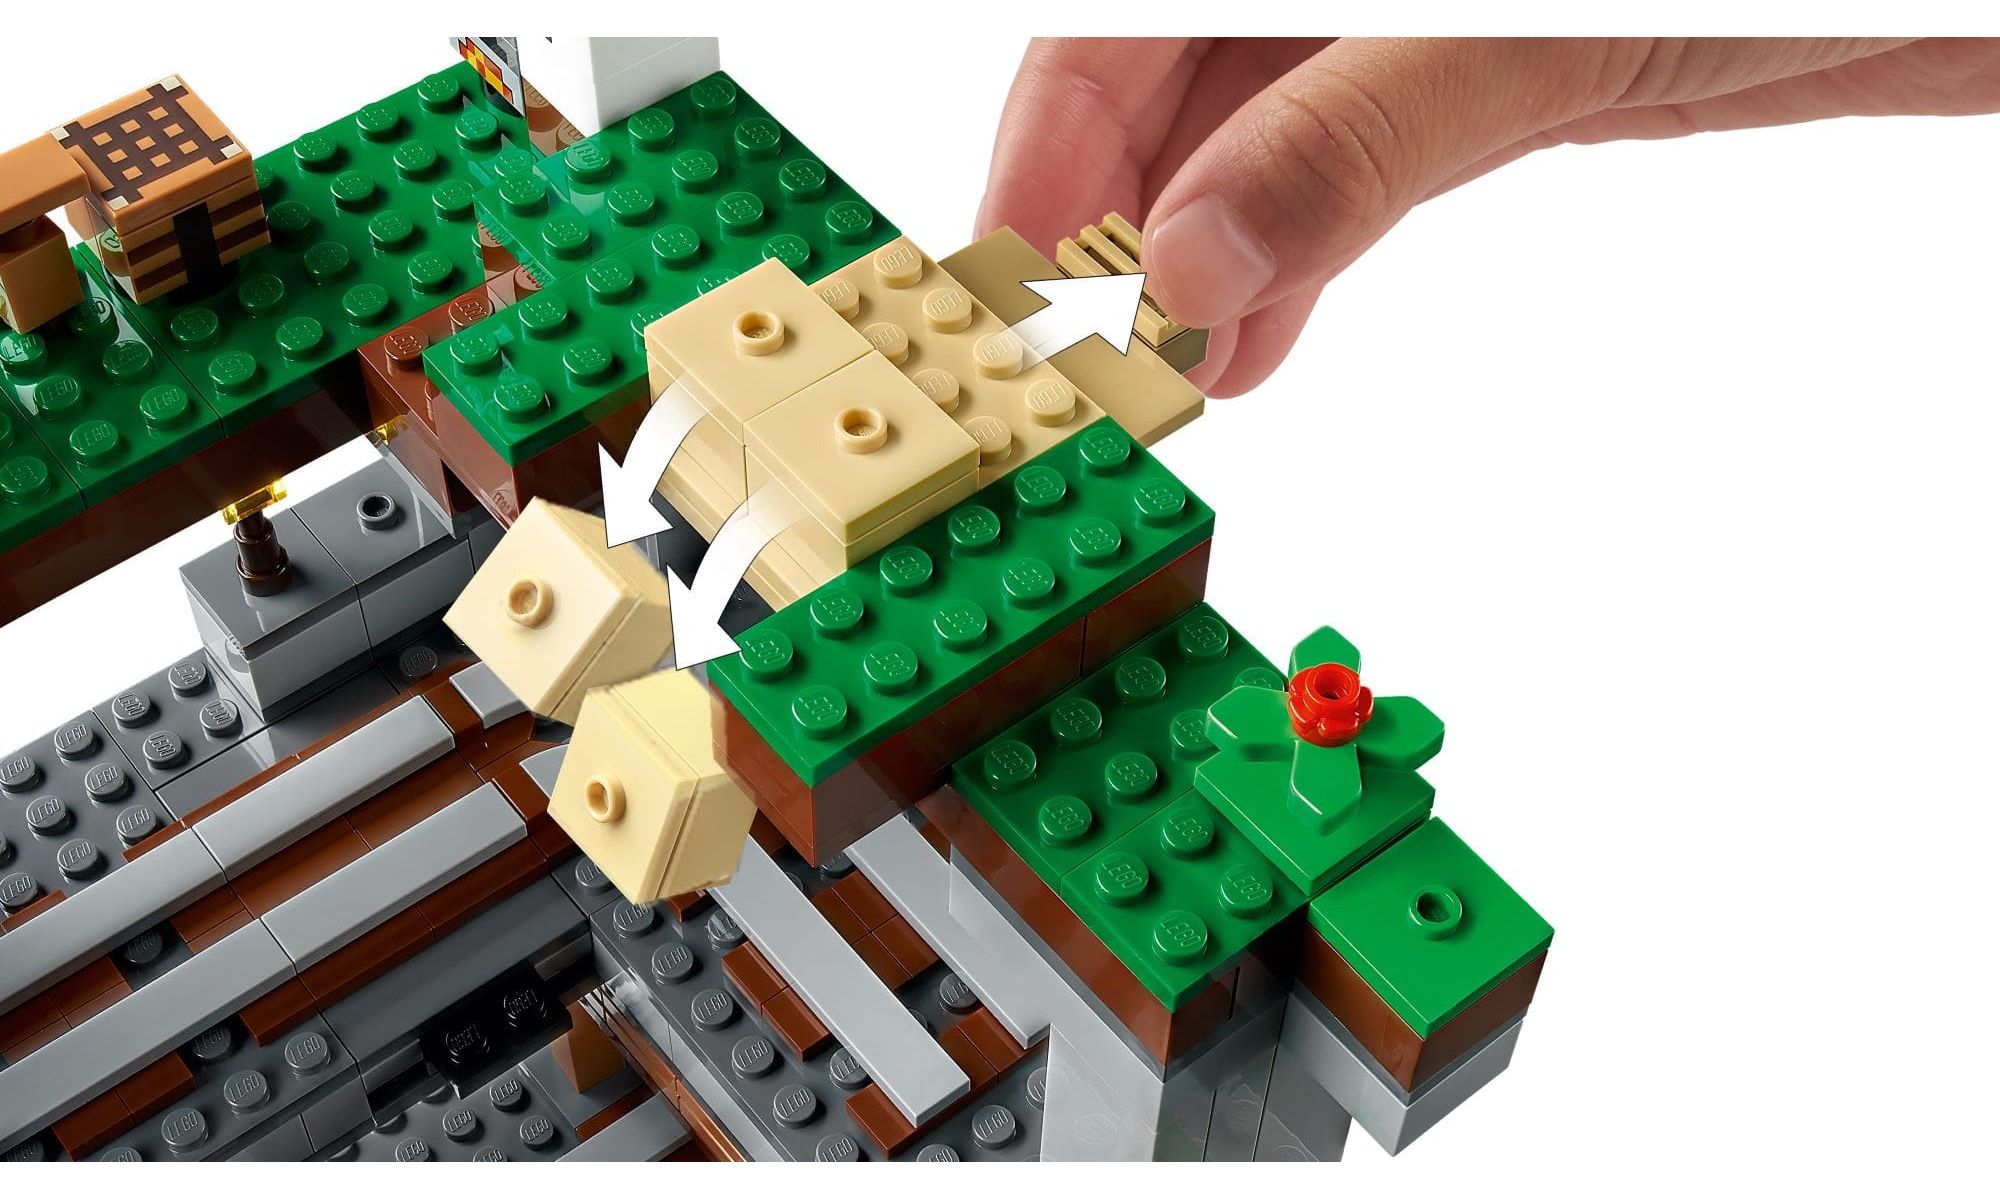 LEGO Minecraft - A Primeira Aventura 21169